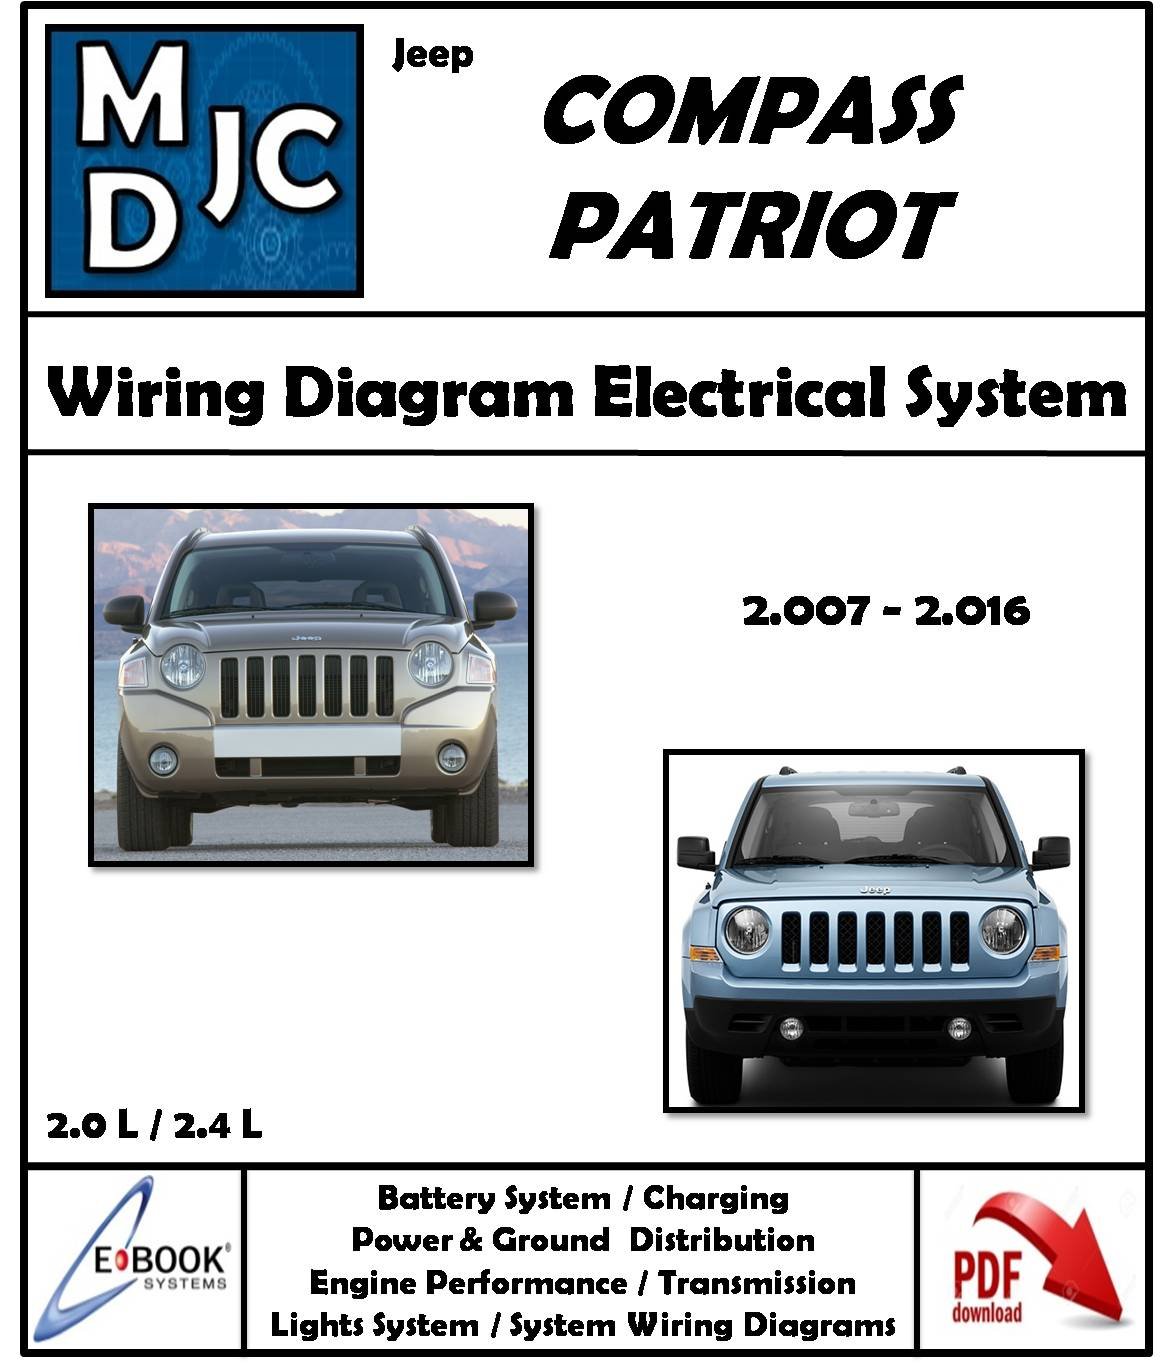 Jeep Compass / Patriot 2007 - 2016